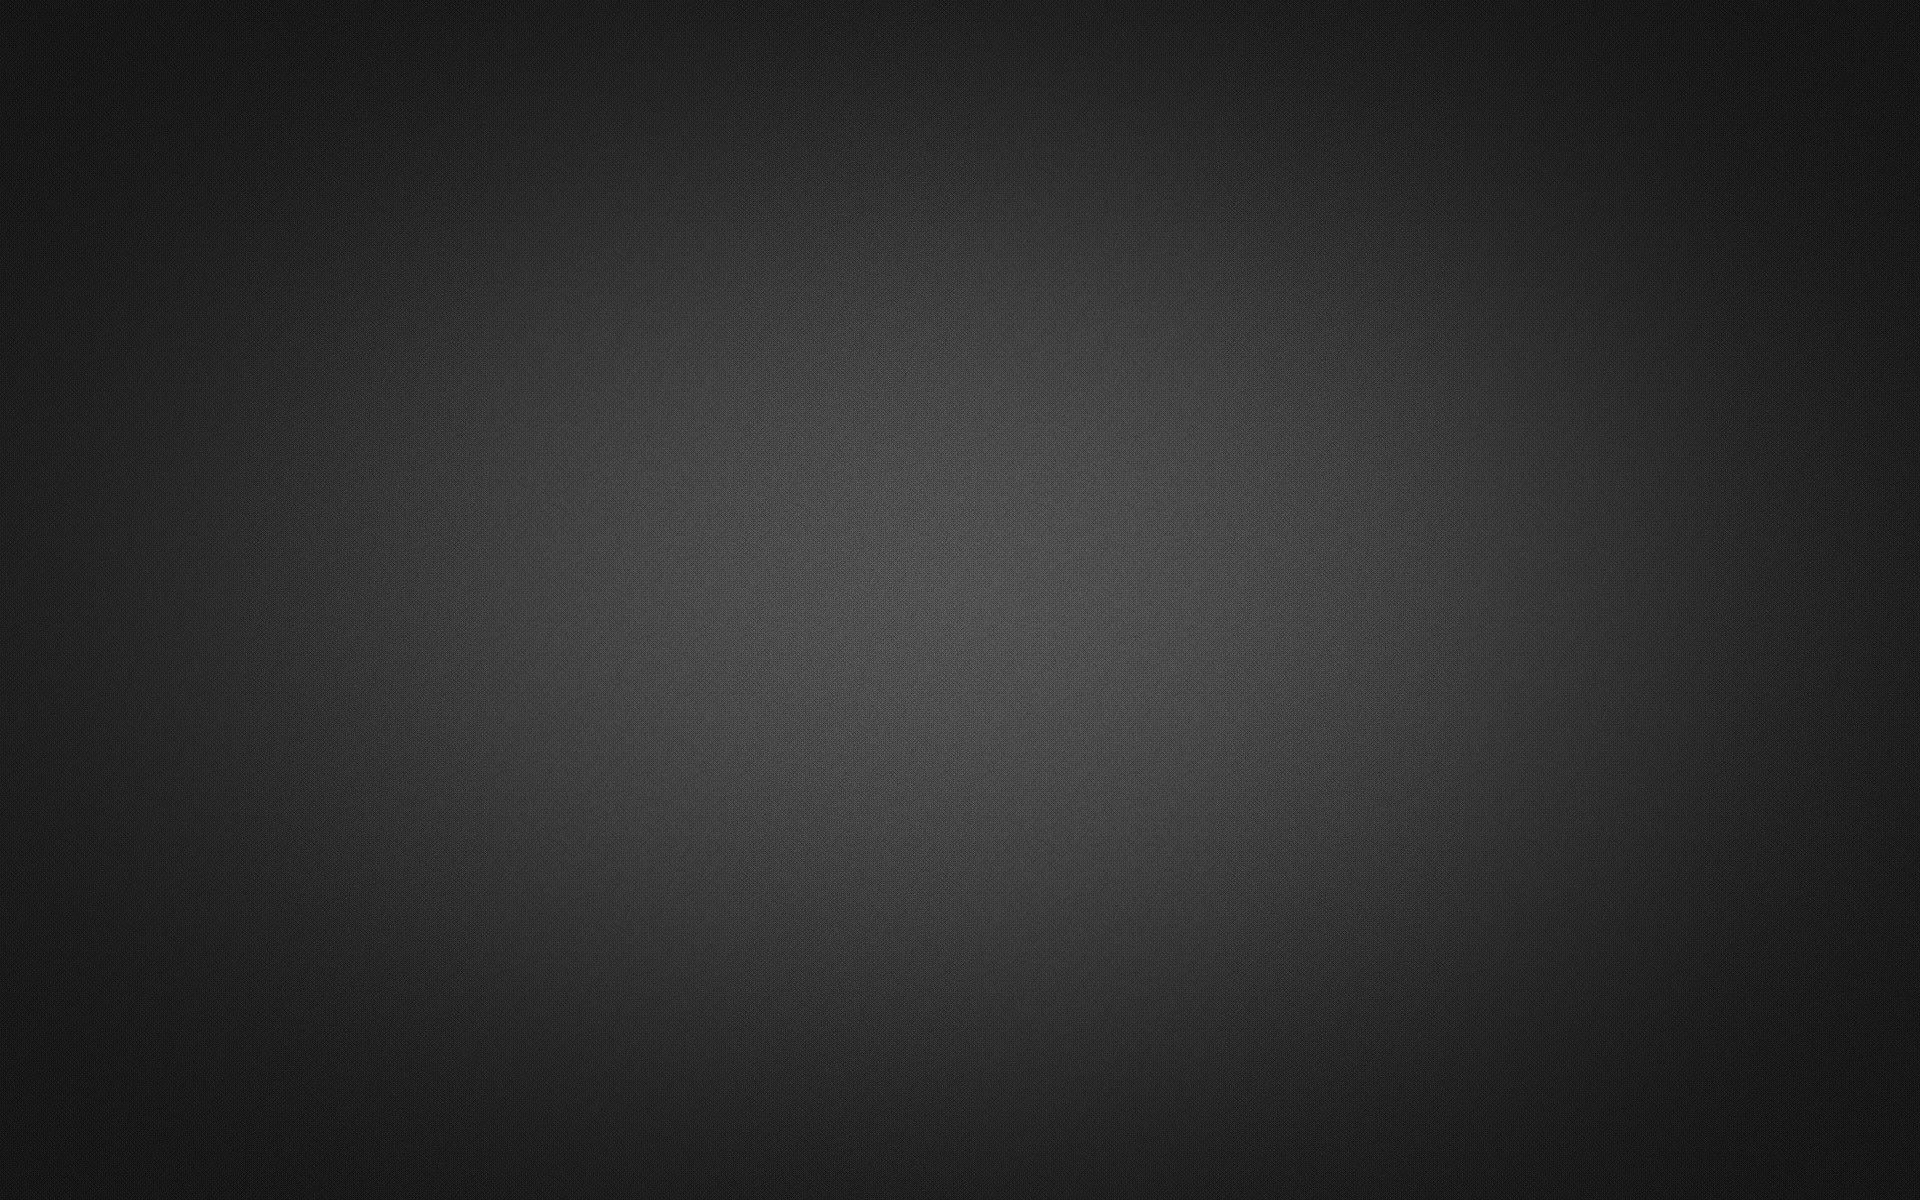 Fondos de pantalla gris oscuro - FondosMil